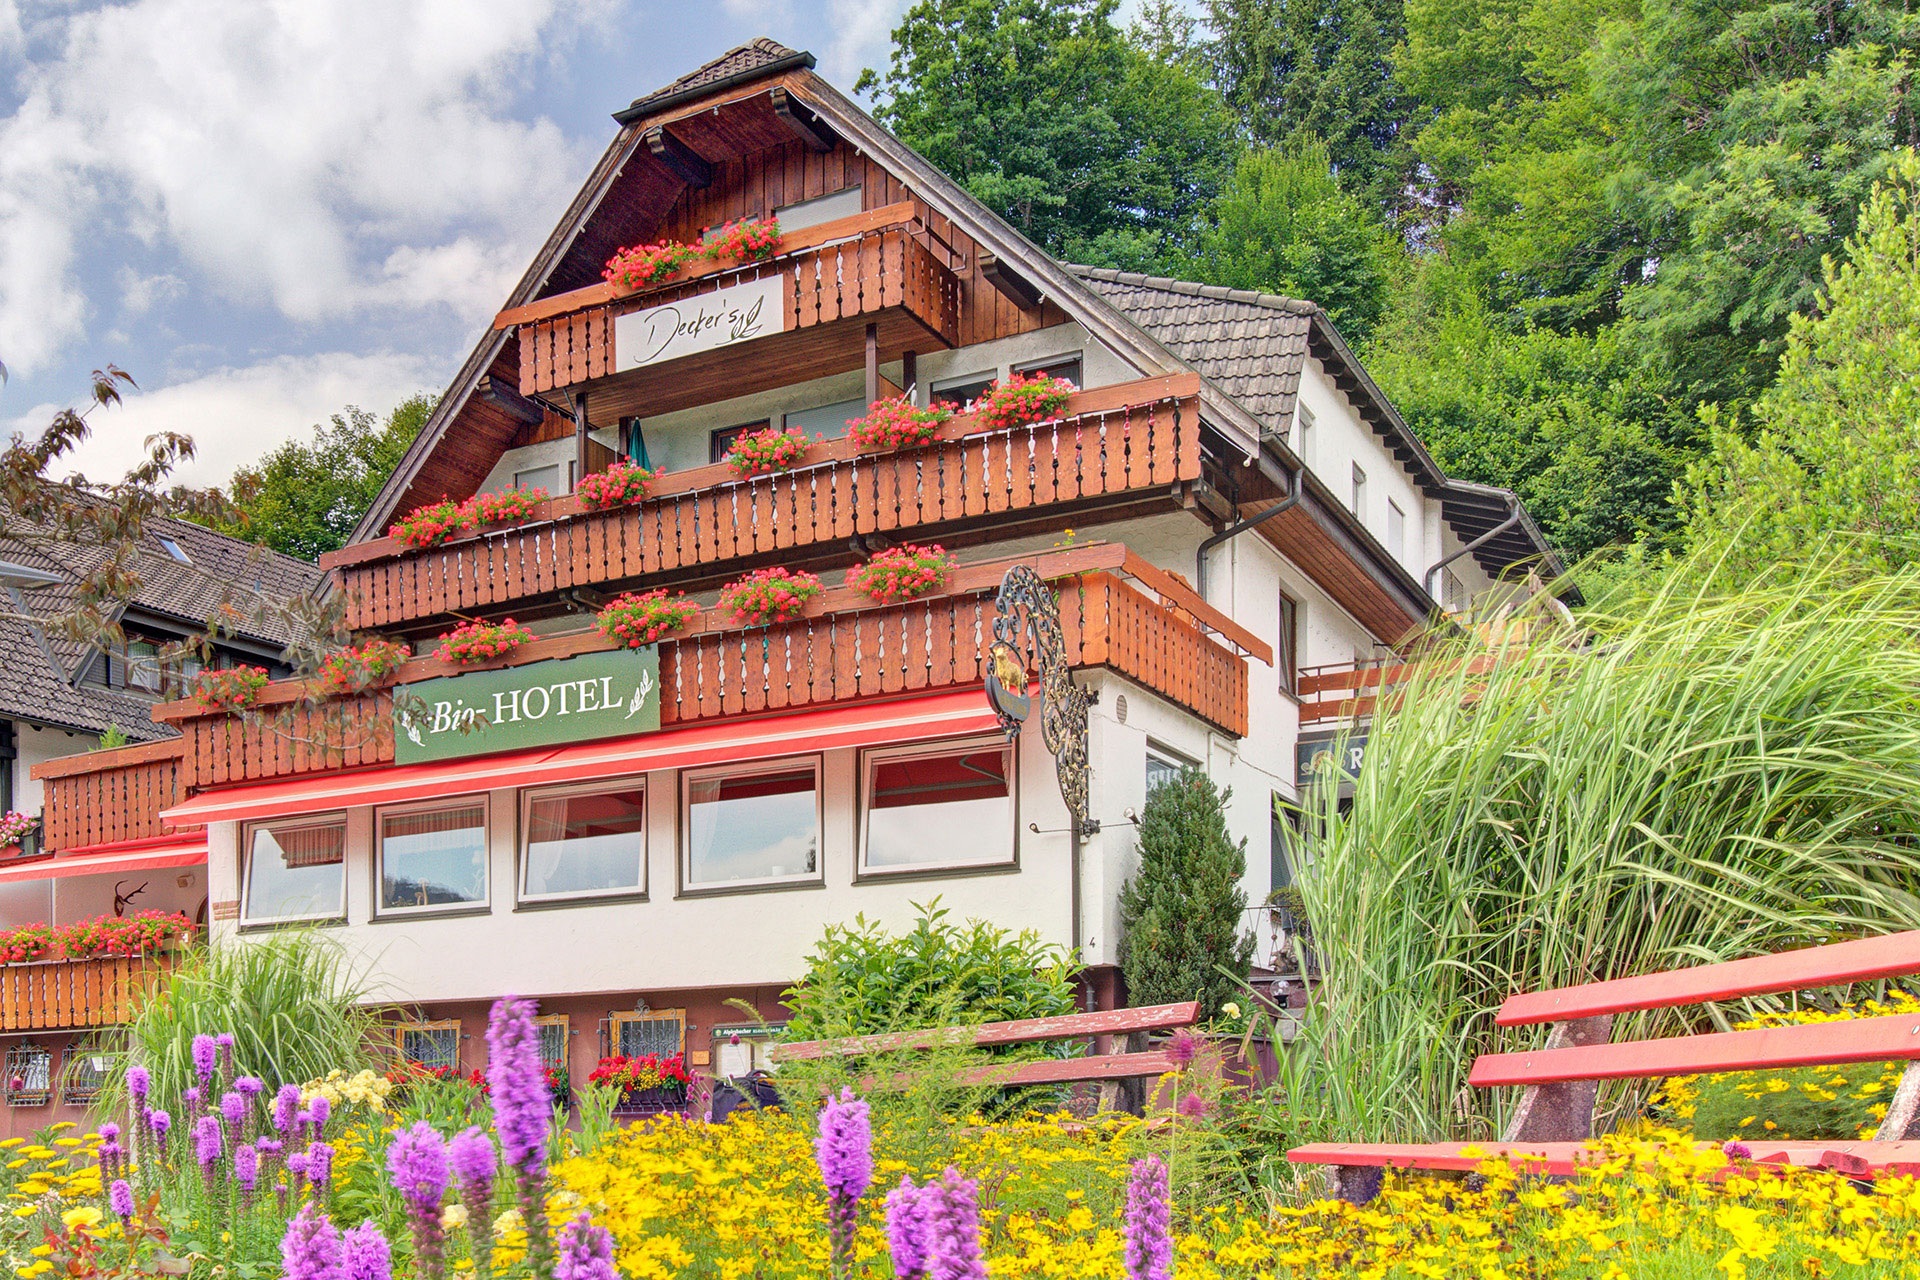 hotelfoto von aussen mit geranienblumenkaesten und gelblilanen blueten im vordergrund